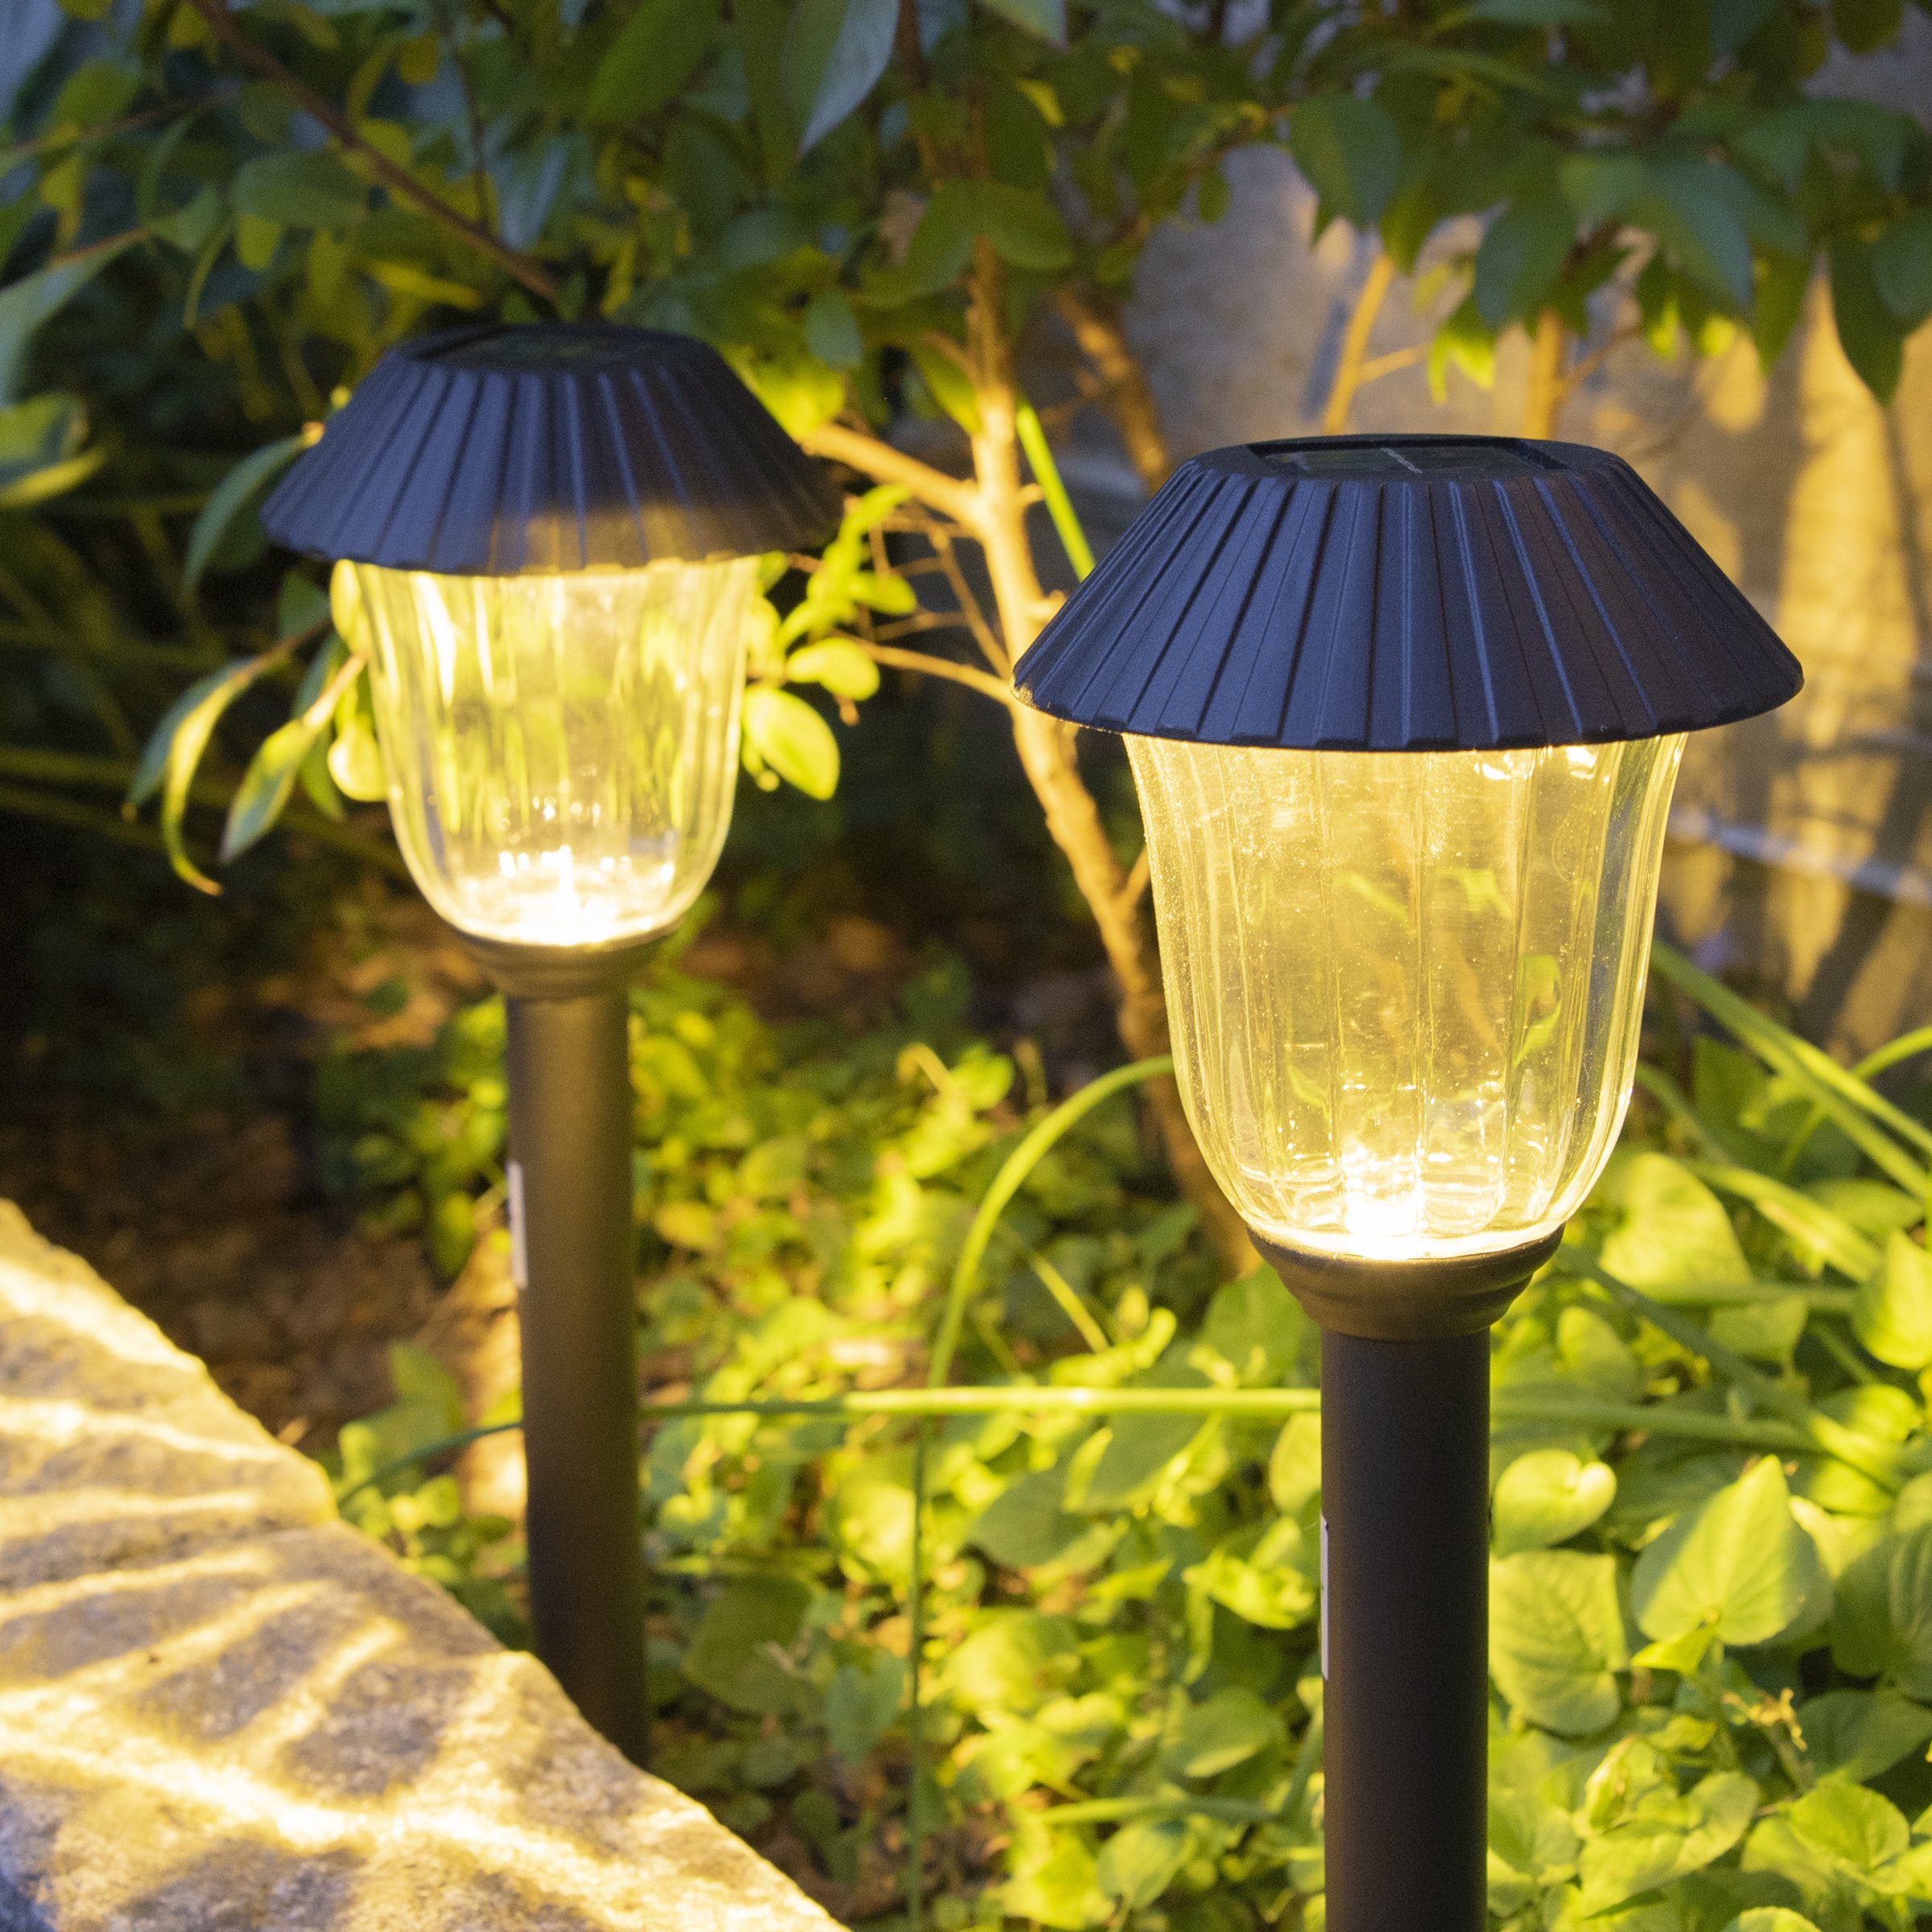 Lanterna solare cinese LED Nylon effetto fiamma - Bianco caldo - Piccolo  mobilio da giardino - Eminza